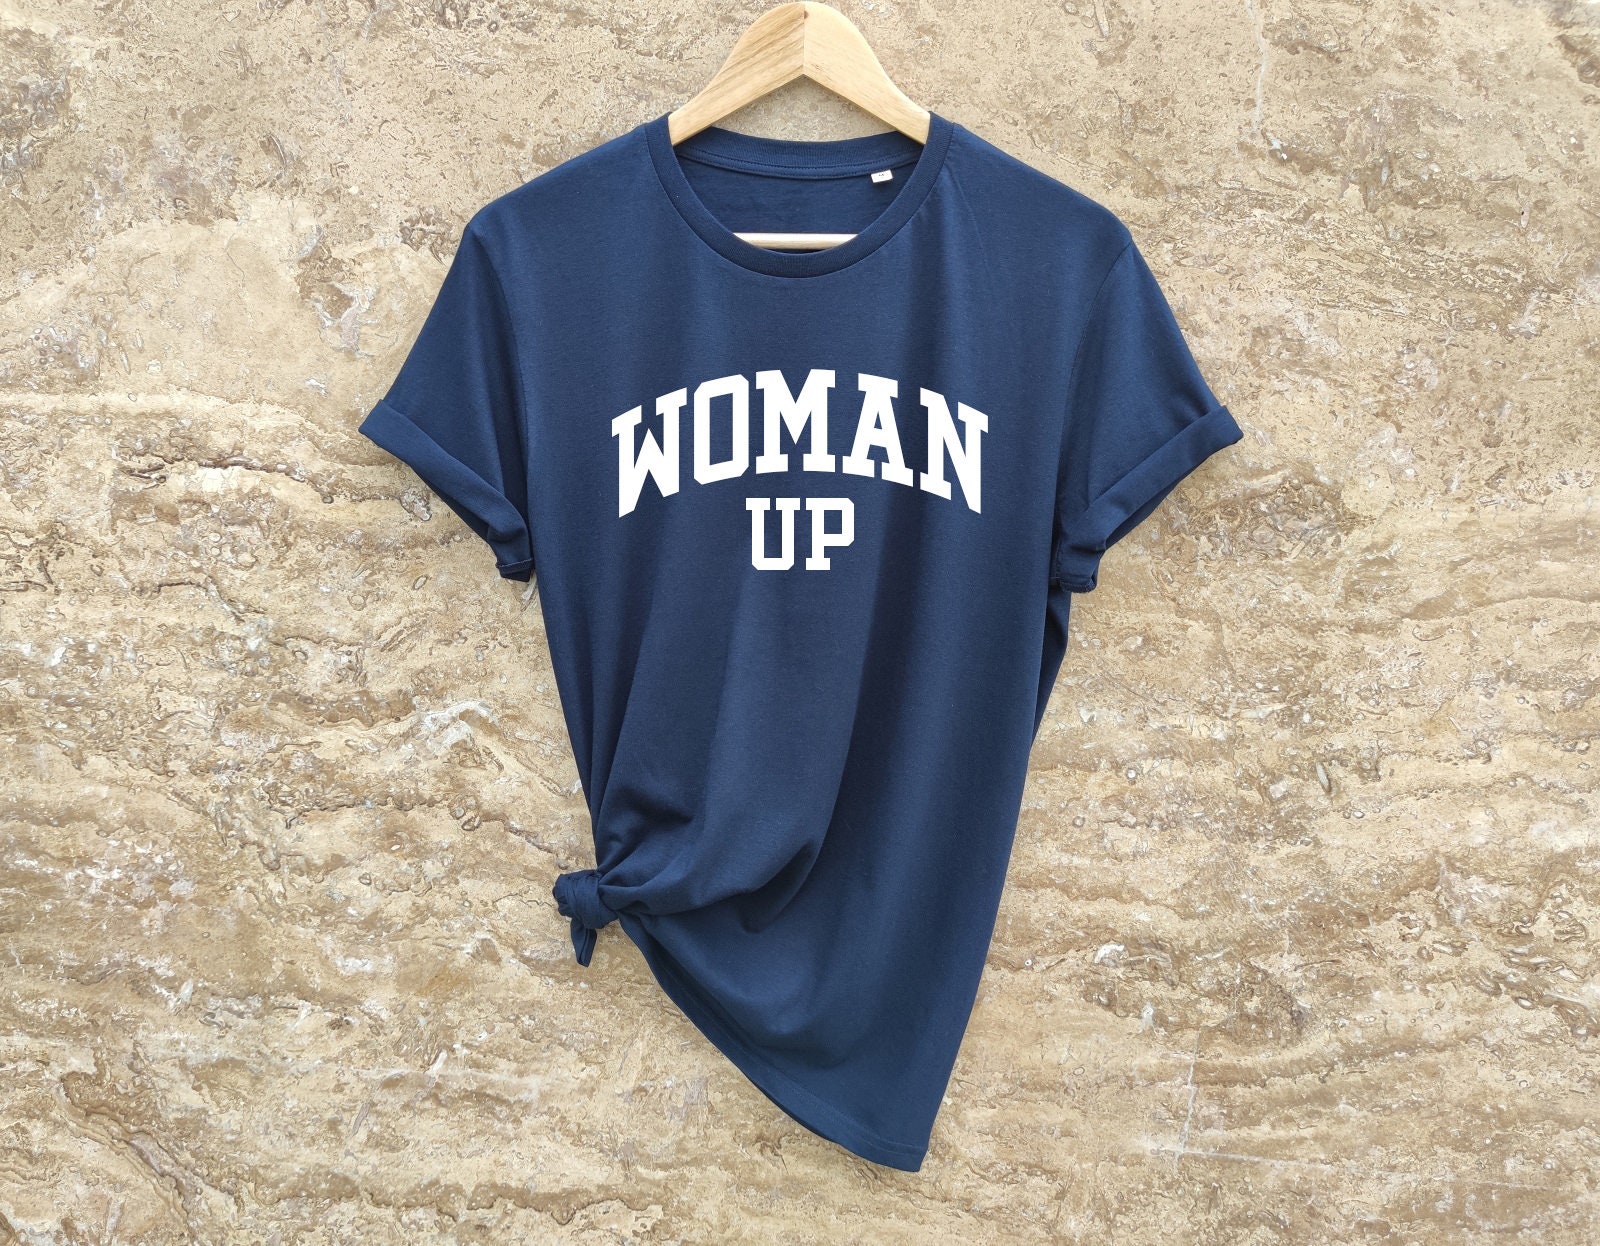 Discover Woman Up Shirt, Women's Shirt, Feminist Tee, Motivational Shirt, Woman Up Tee, Shirt, Tops and Tees, Empowerment Women Tee, Feminist Shirt